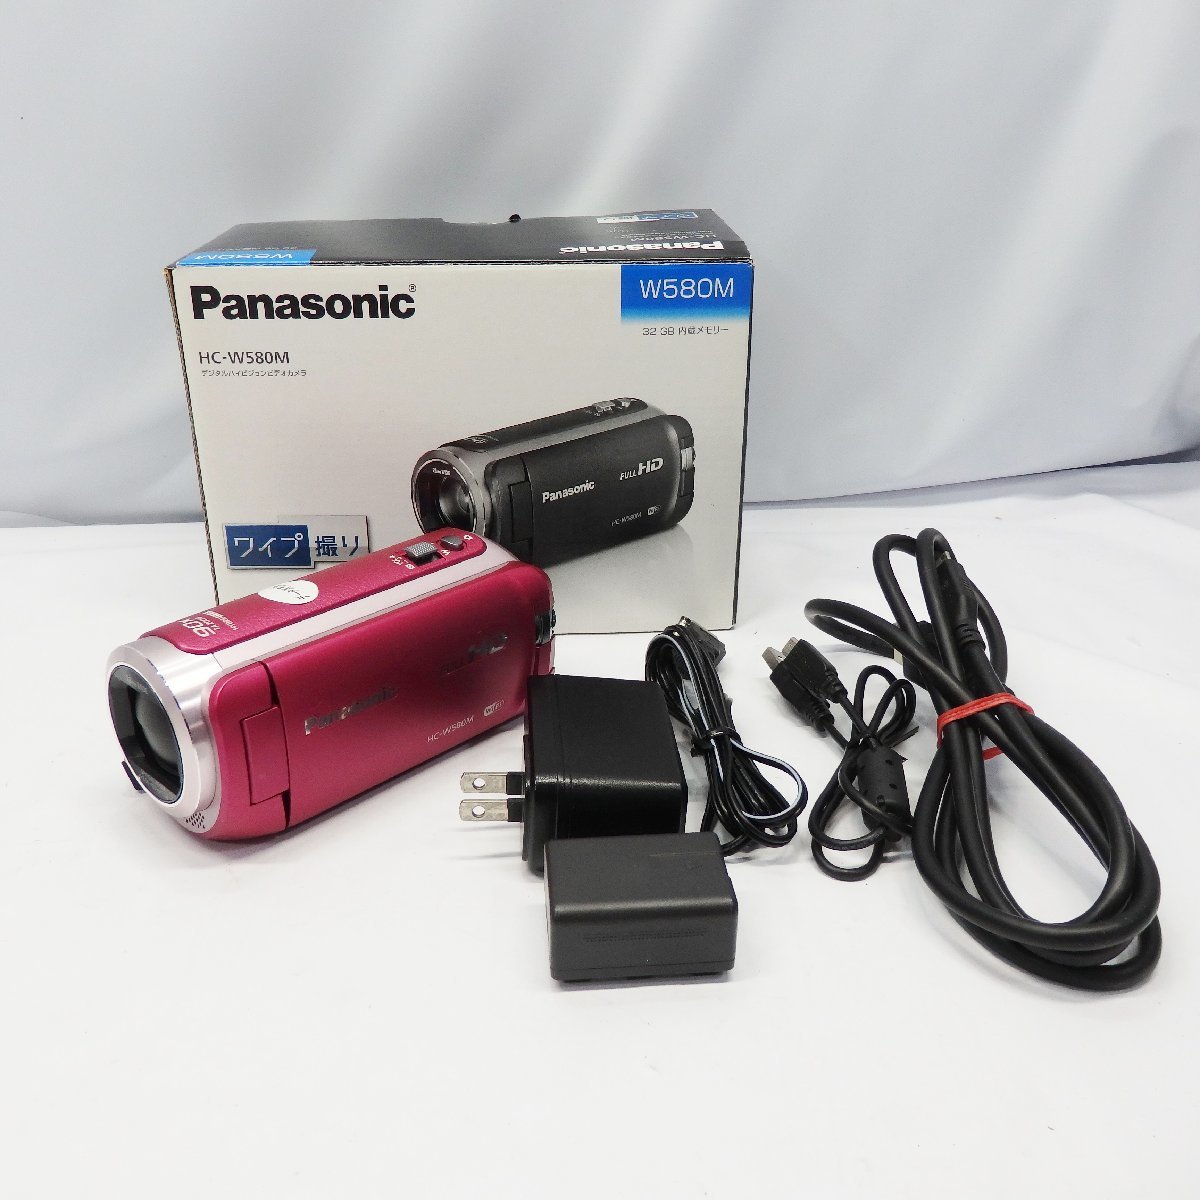 Panasonic フルハイビジョンビデオカメラ HC-W580M-P ピンク【栃木出荷